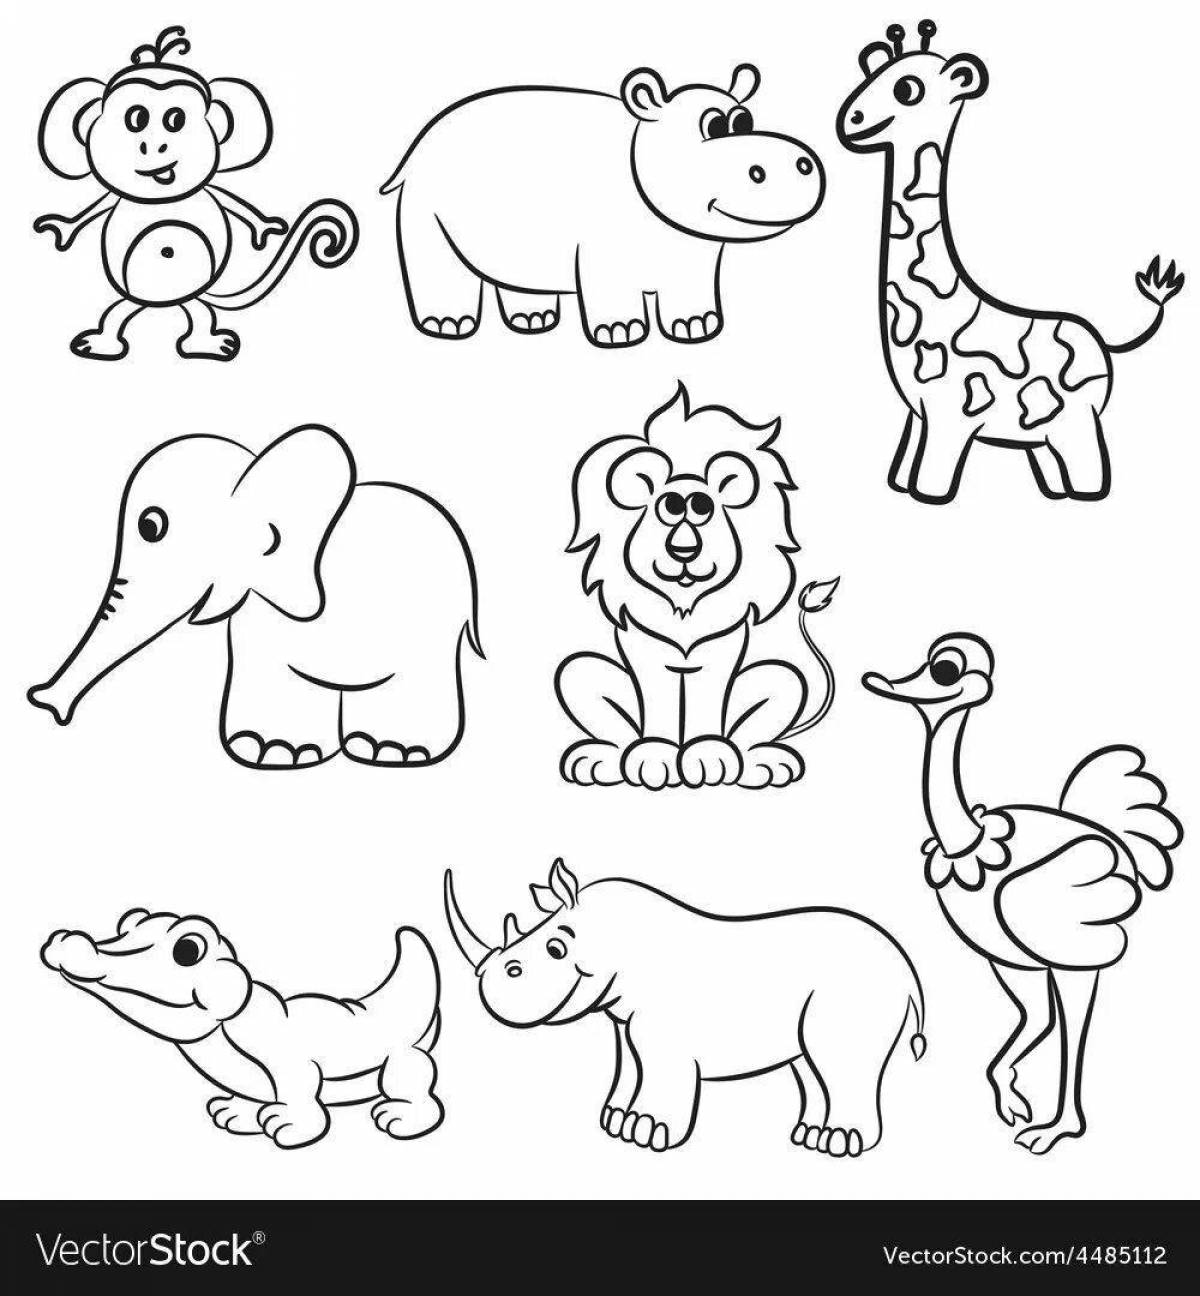 Выдающаяся страница раскраски африканских животных для детей 5-7 лет